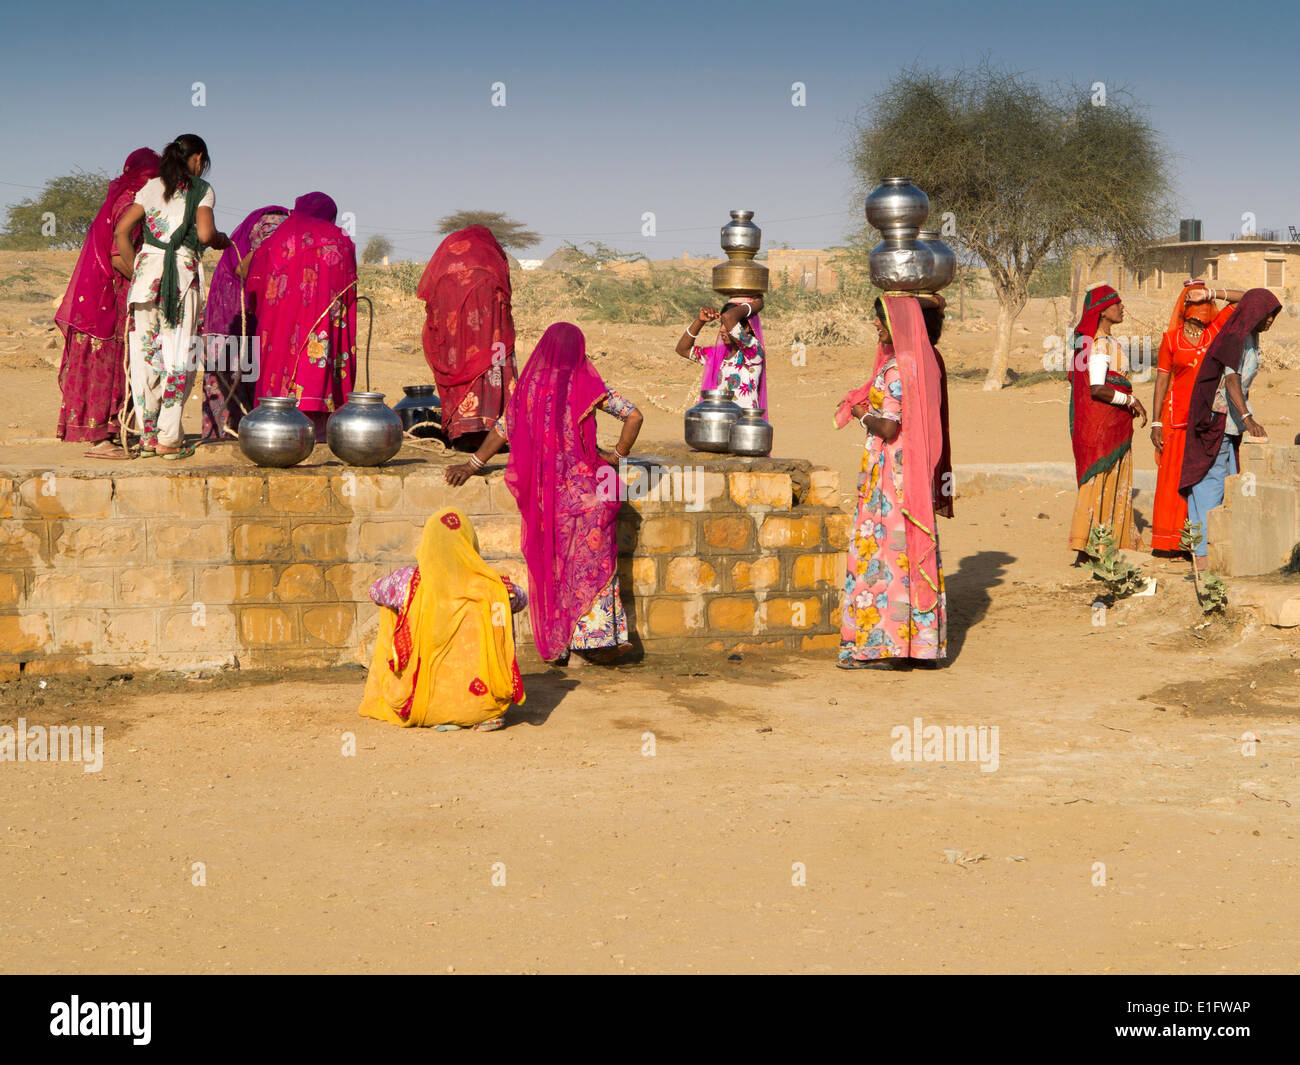 L'Inde, Rajasthan, Jaisalmer, désert du Thar, Khuri, les femmes vêtues de saris colorés à la collecte de l'eau du puits du village Banque D'Images